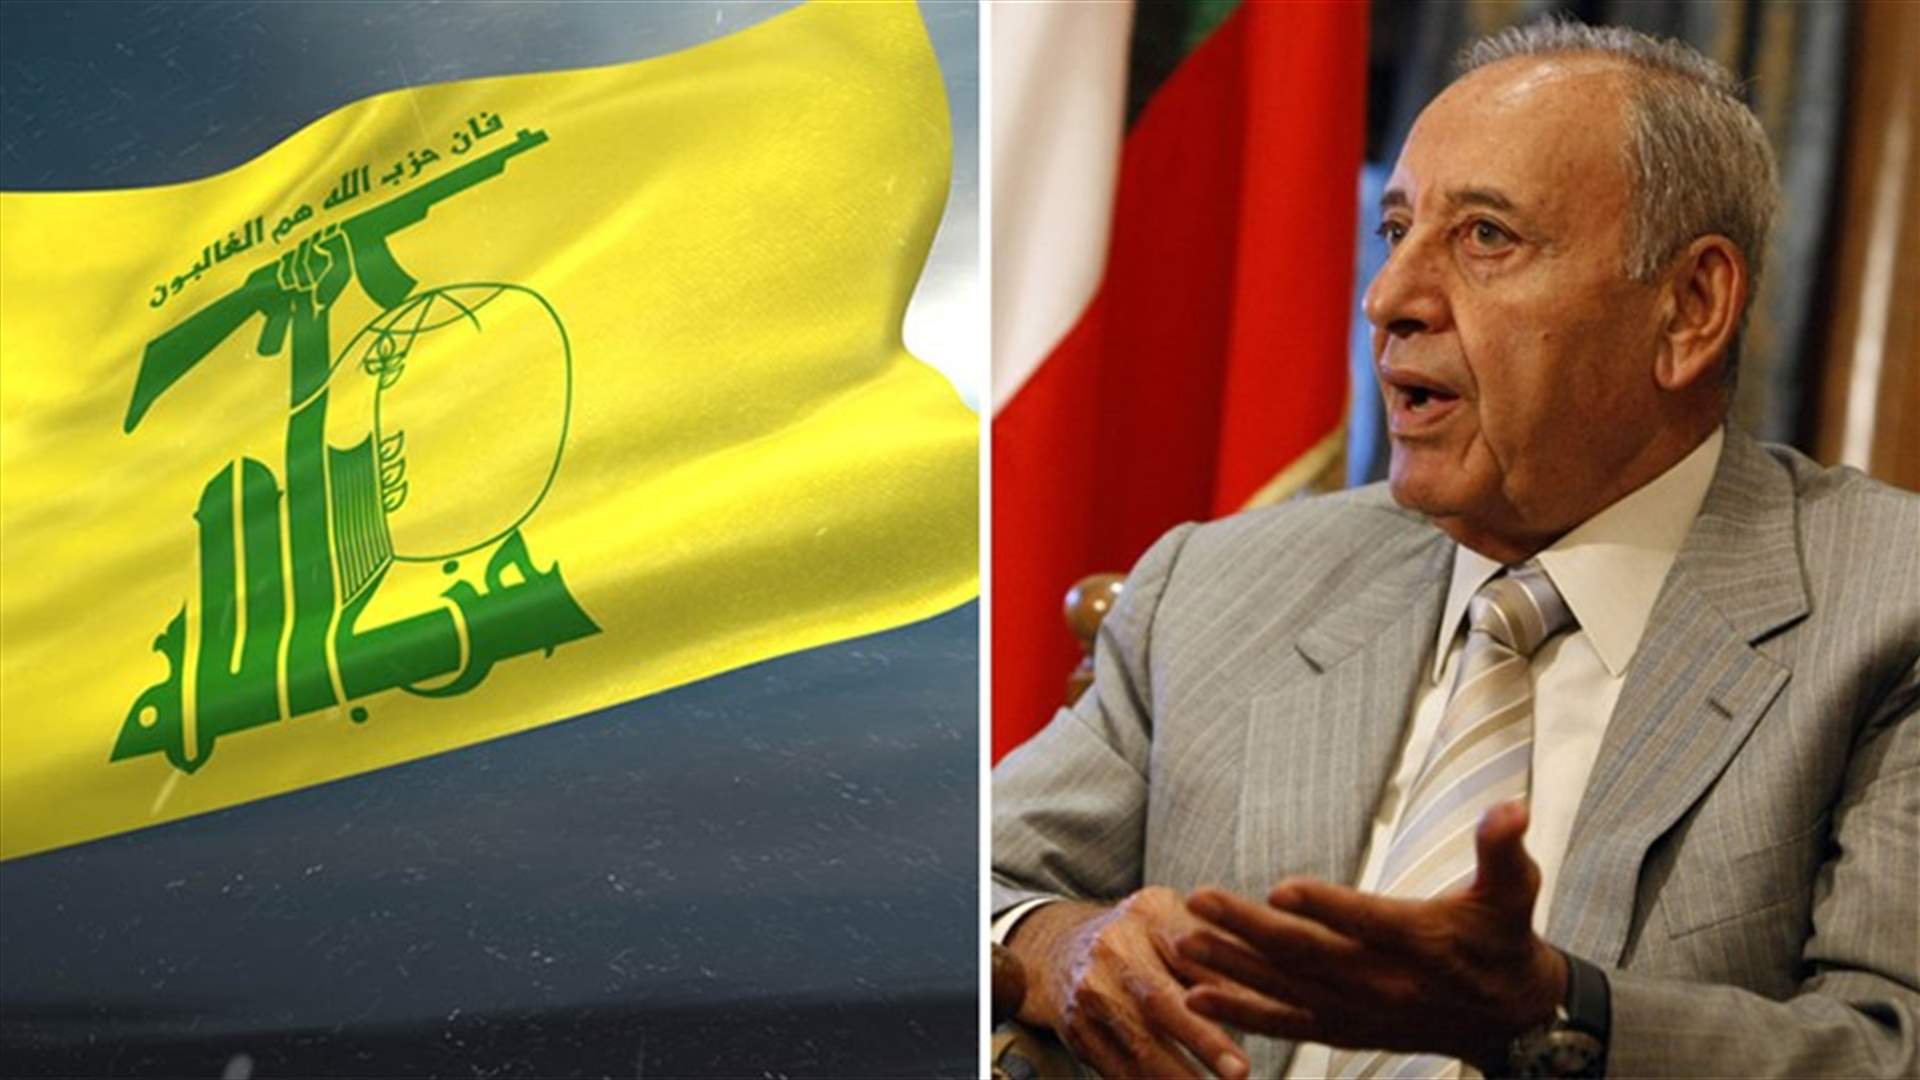 هل يتحرّك حزب الله وبري لحلحلة الأزمة الحكومية؟ (الجمهورية)